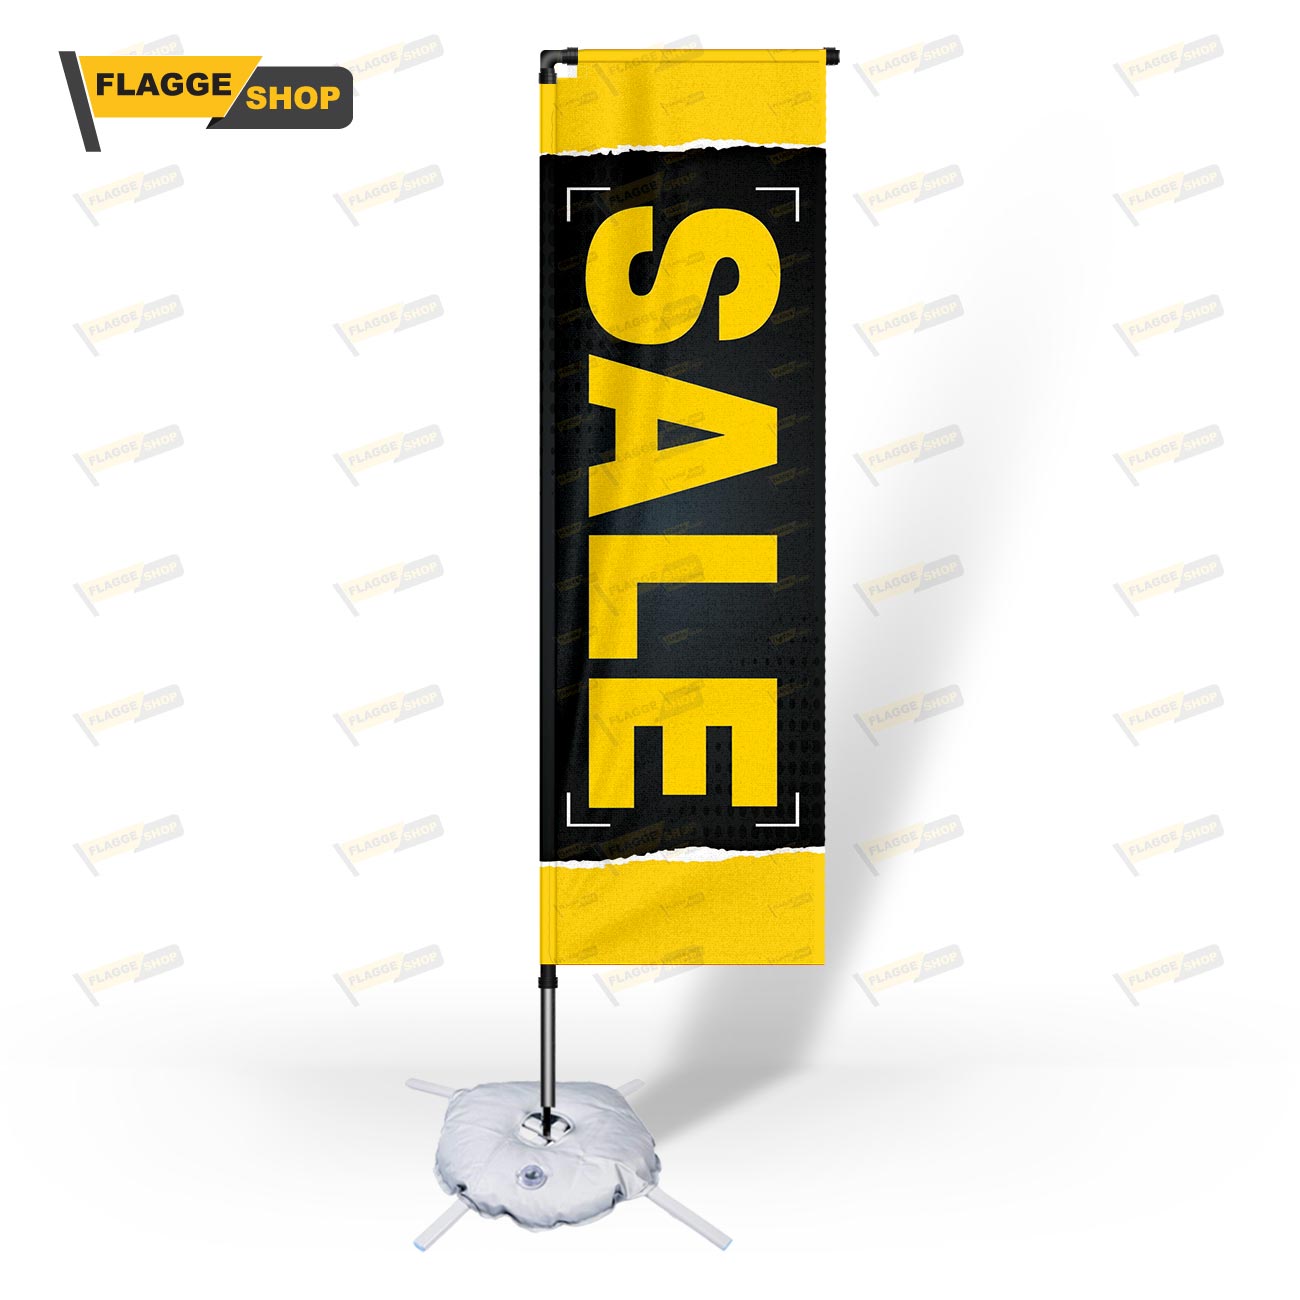 SALE Beachflag - Werbefahne für Außenwerbung online günstig kaufen - Premium Qualität